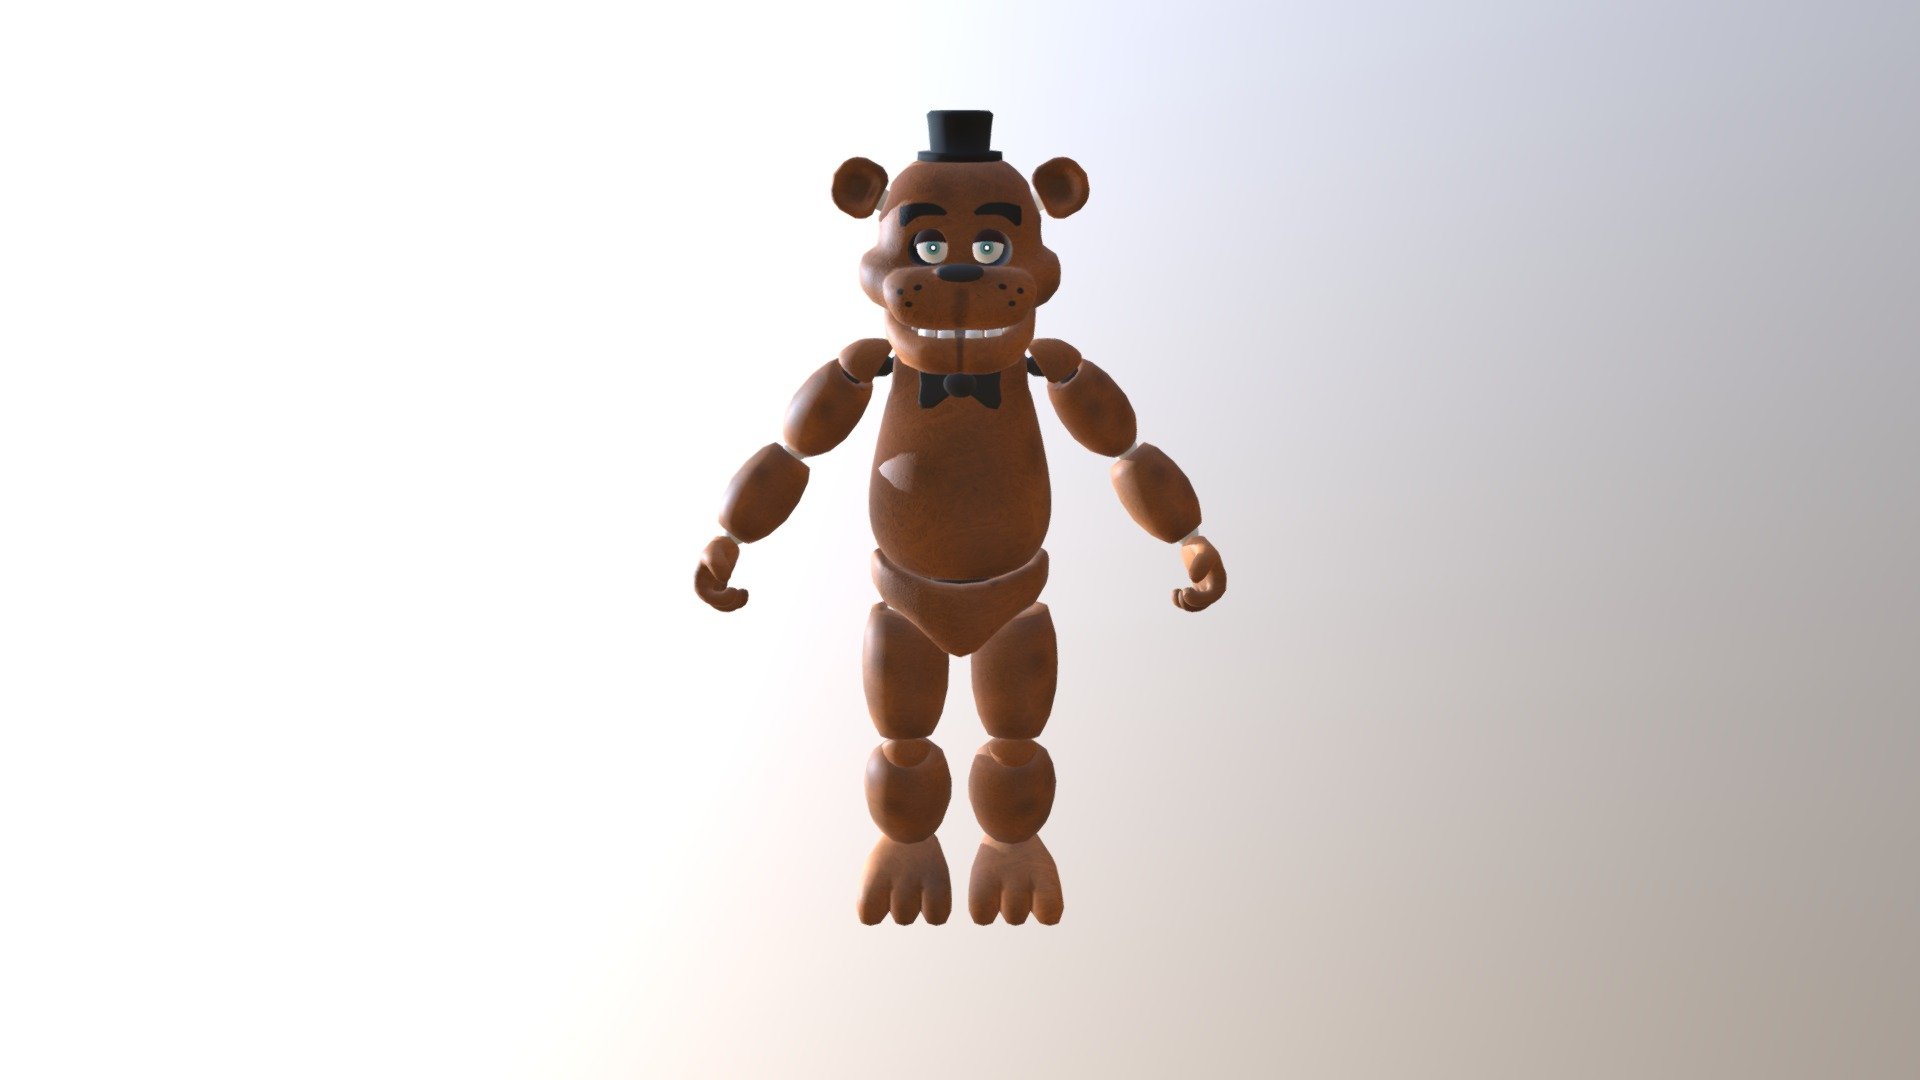 Freddy-fazzbear - 3D model by Bonbonguyboyuh455 [b25c394] - Sketchfab